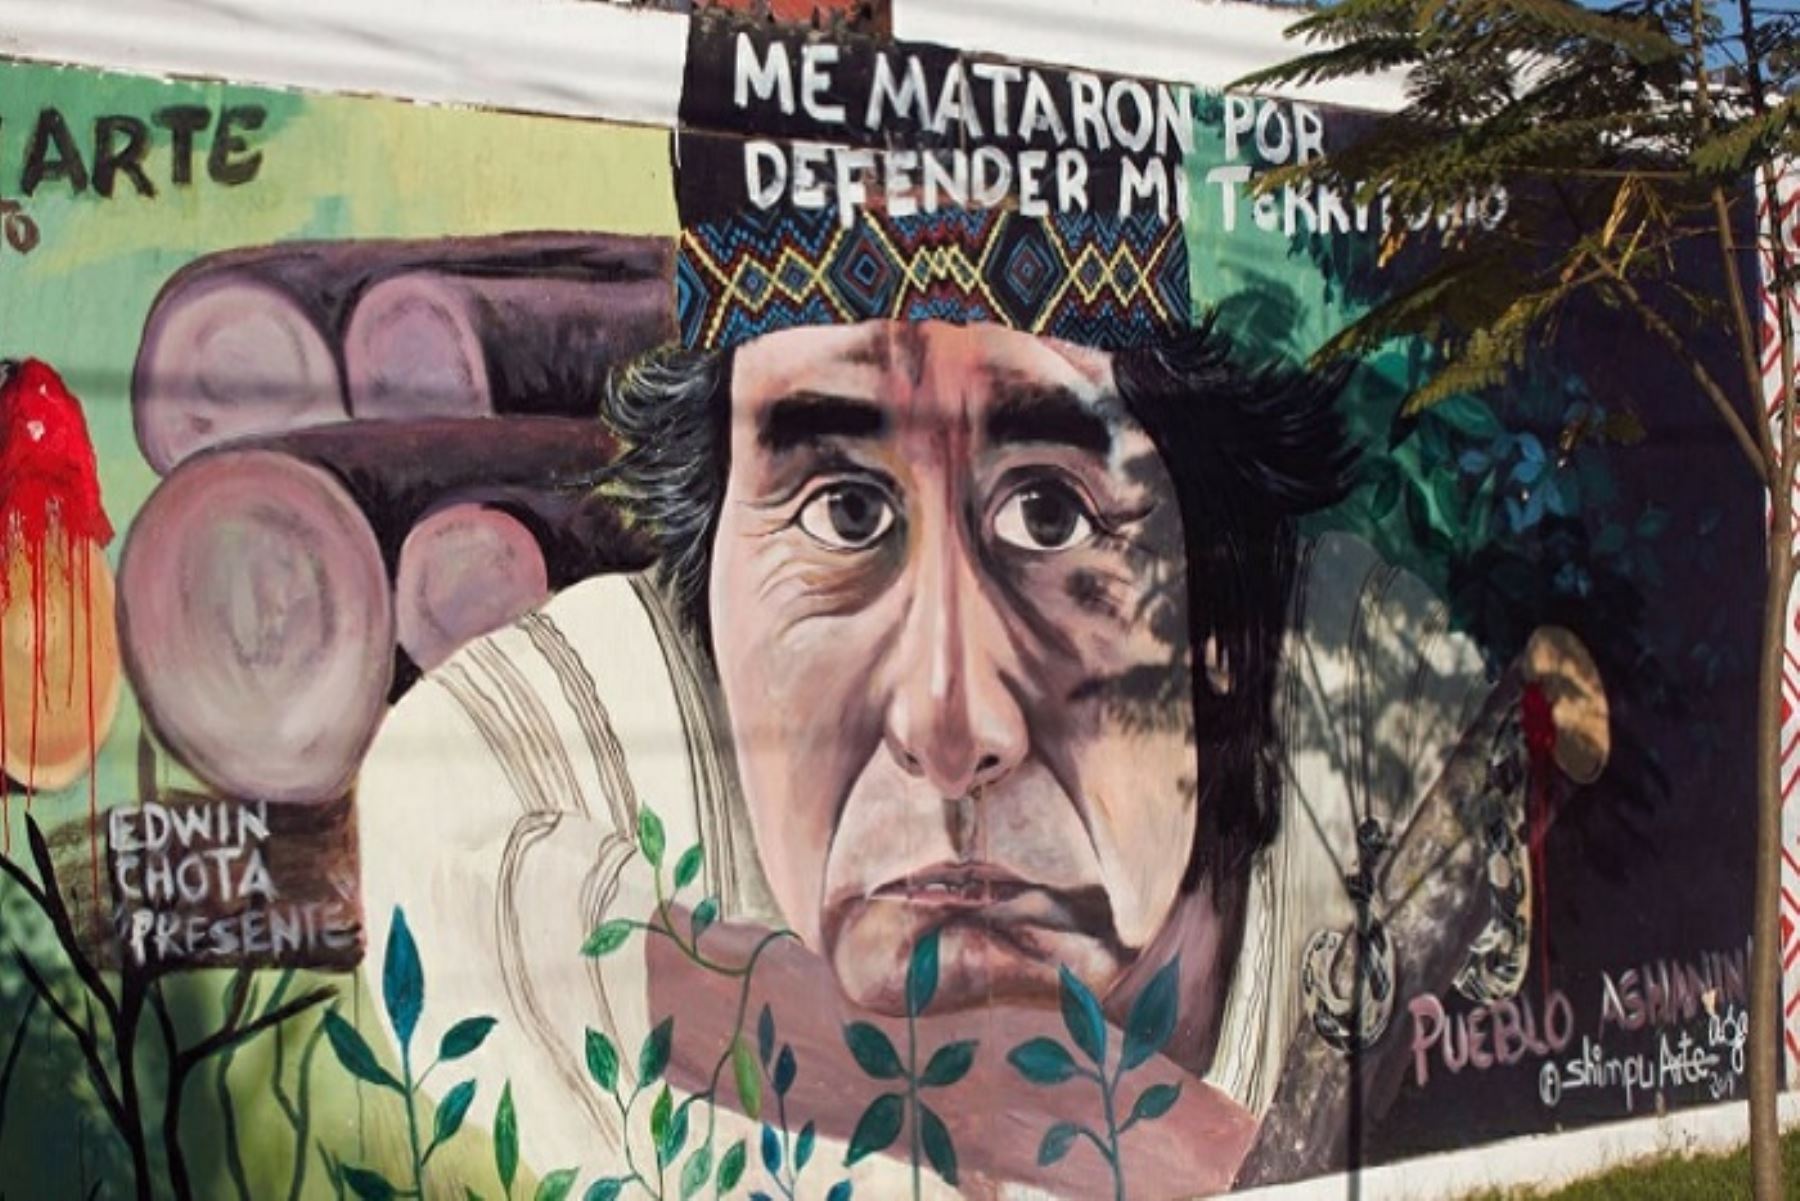 En el curso participó Diana Ríos Rengifo, hija de Jorge Ríos Pérez, defensor ambiental y líder indígena Asháninka quien luchó contra la tala ilegal de los bosques amazónicos en Saweto, Ucayali.